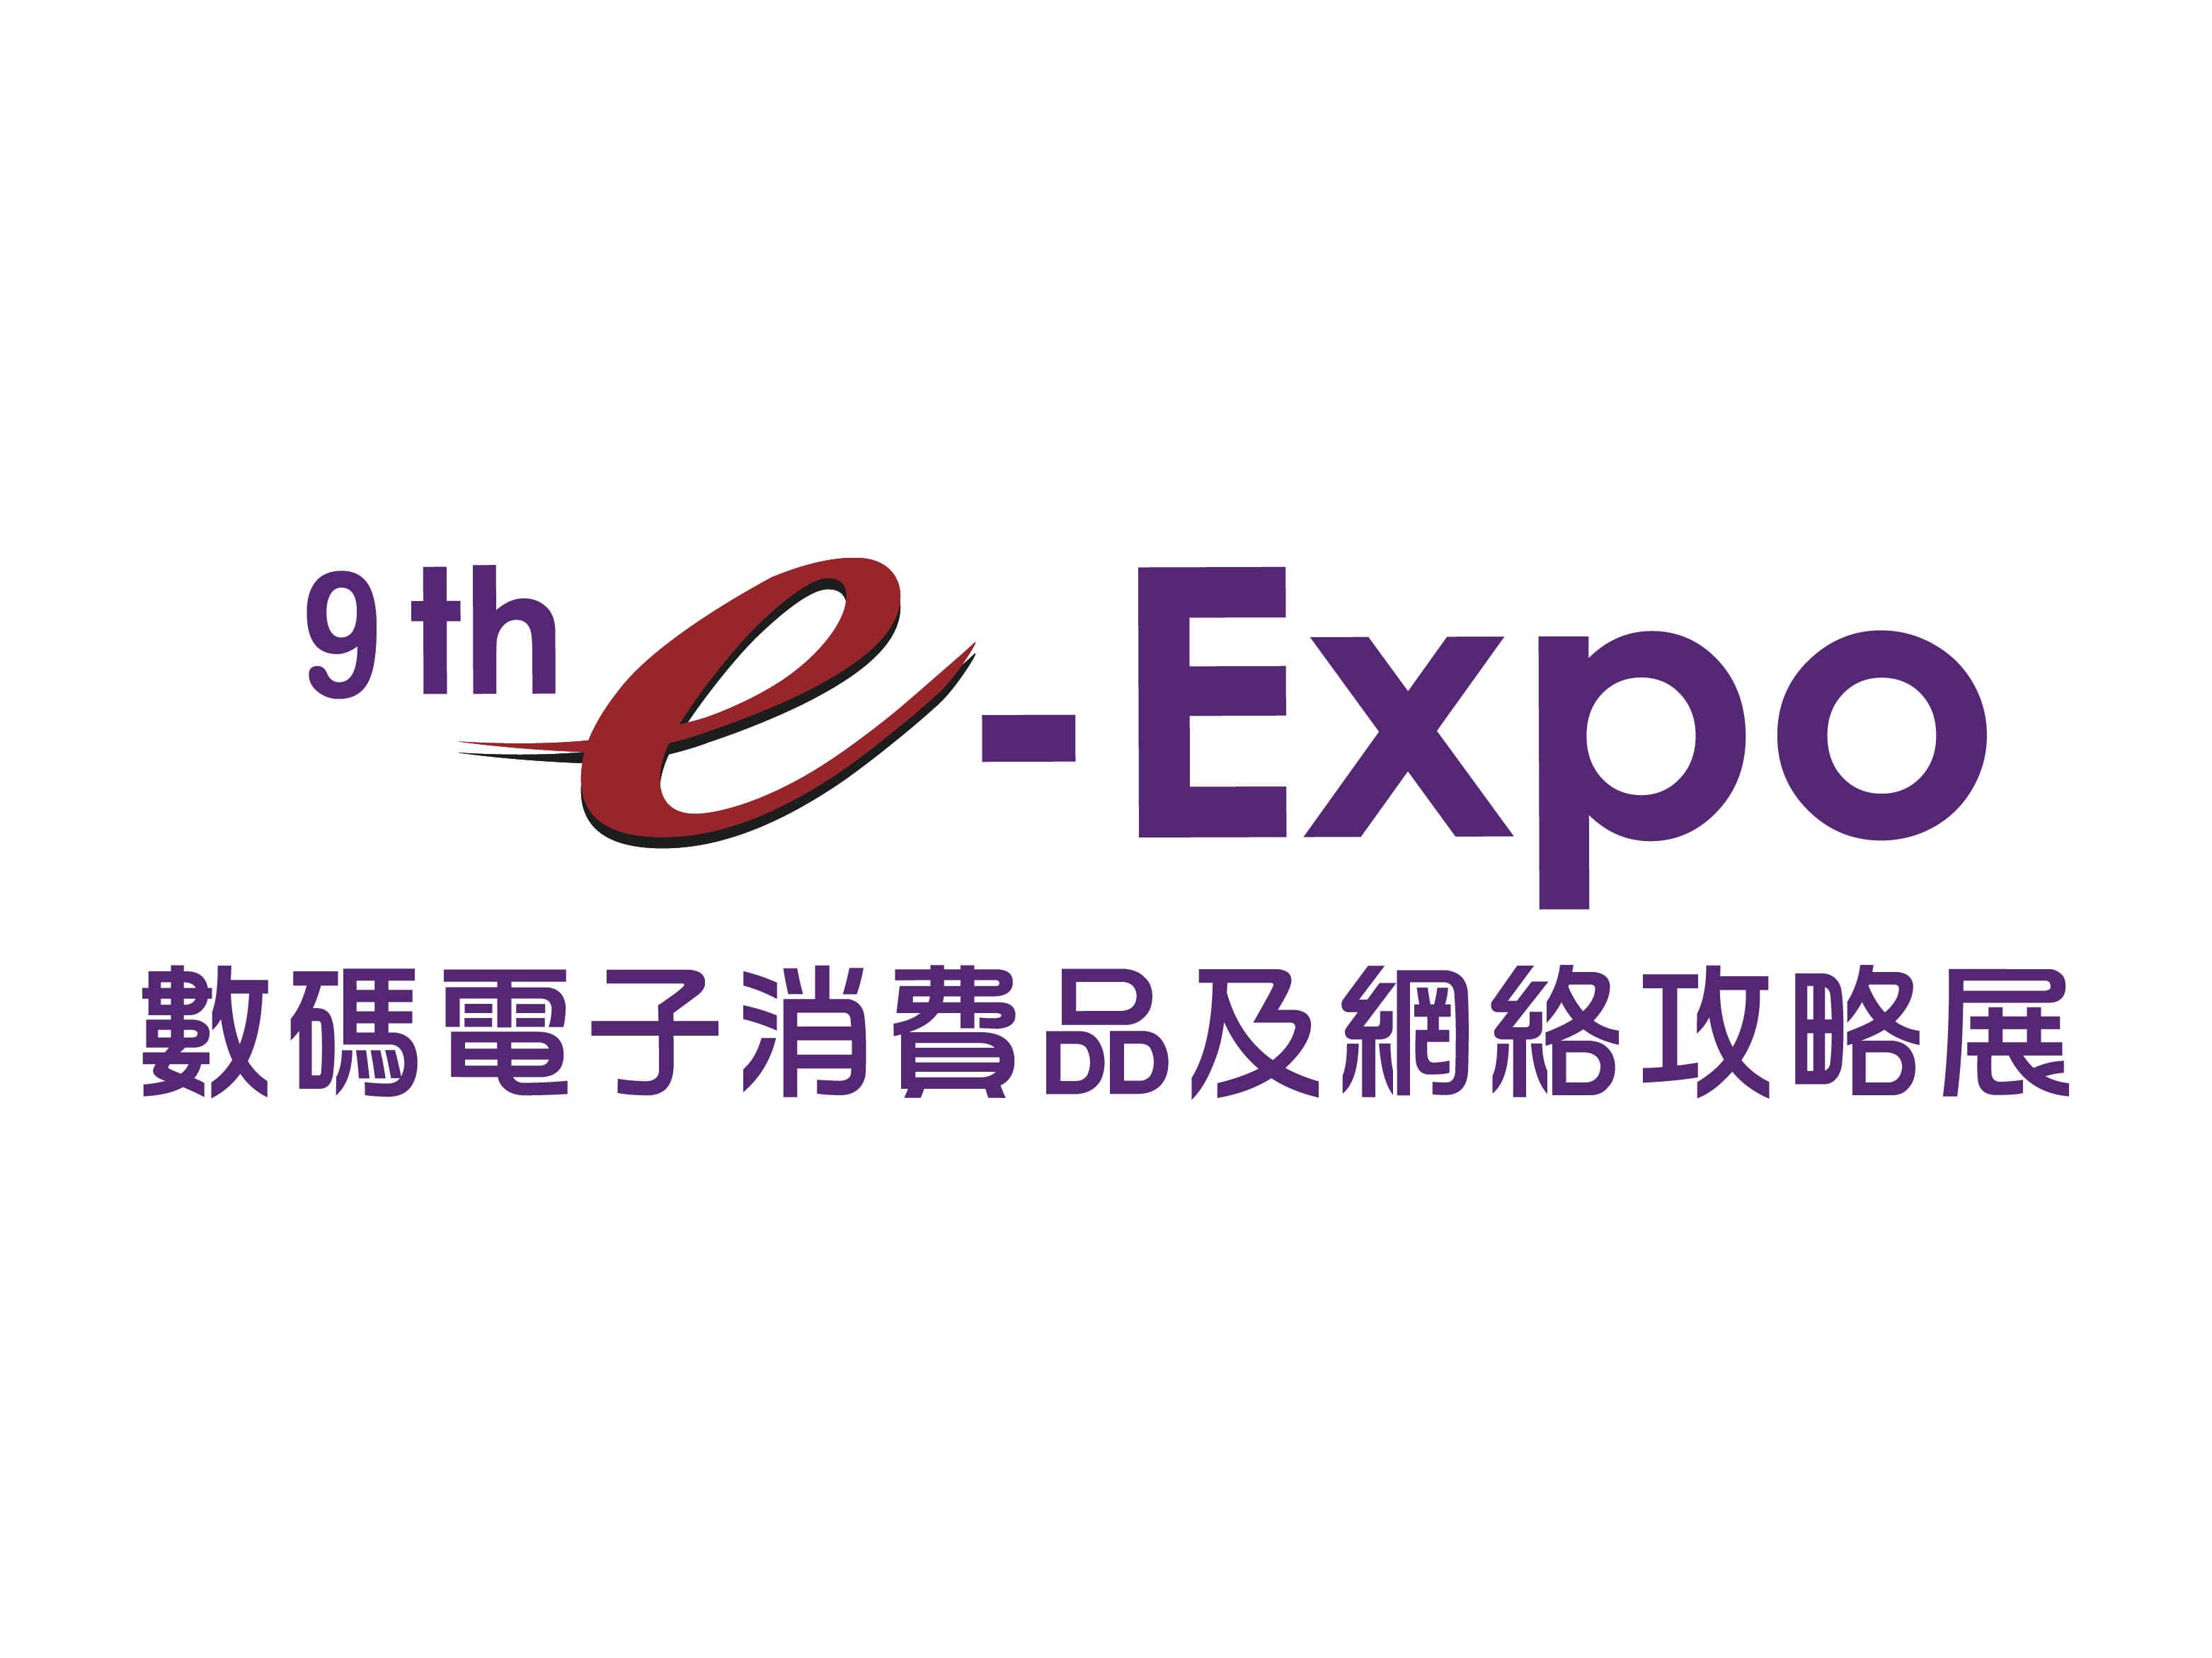 The 9th e Expo